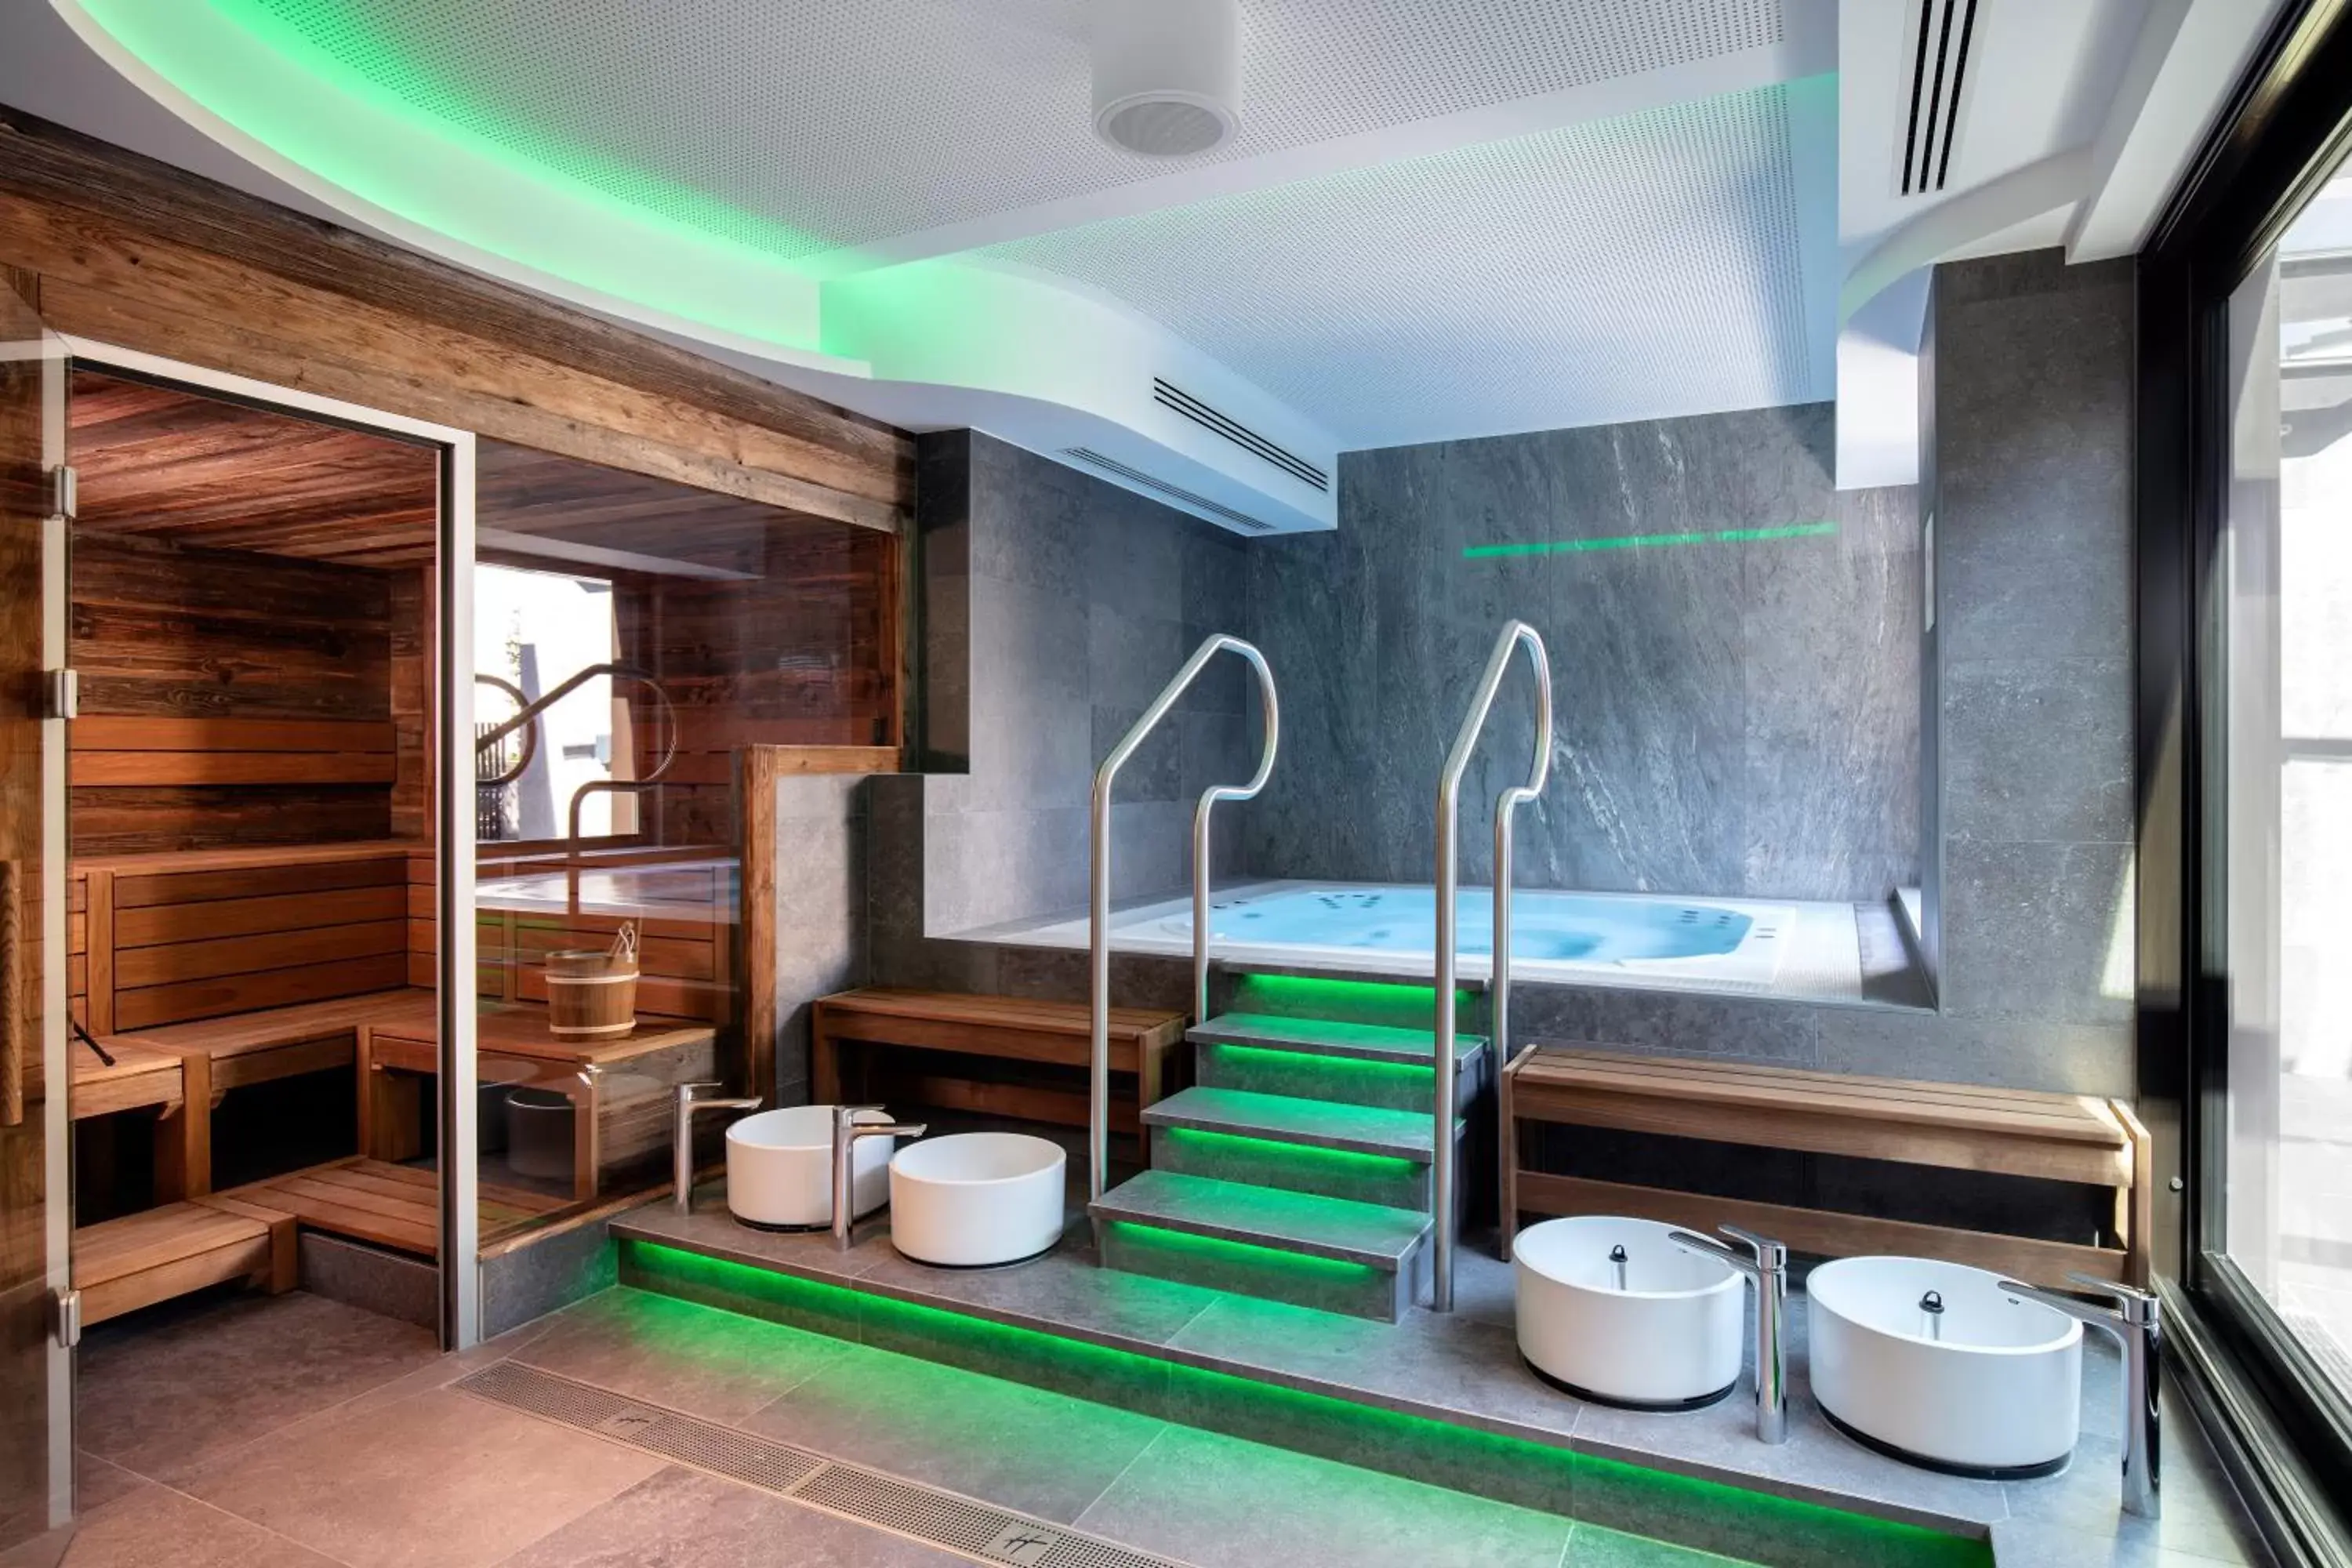 Spa and wellness centre/facilities, Bathroom in Holiday Inn - Osnabrück, an IHG Hotel